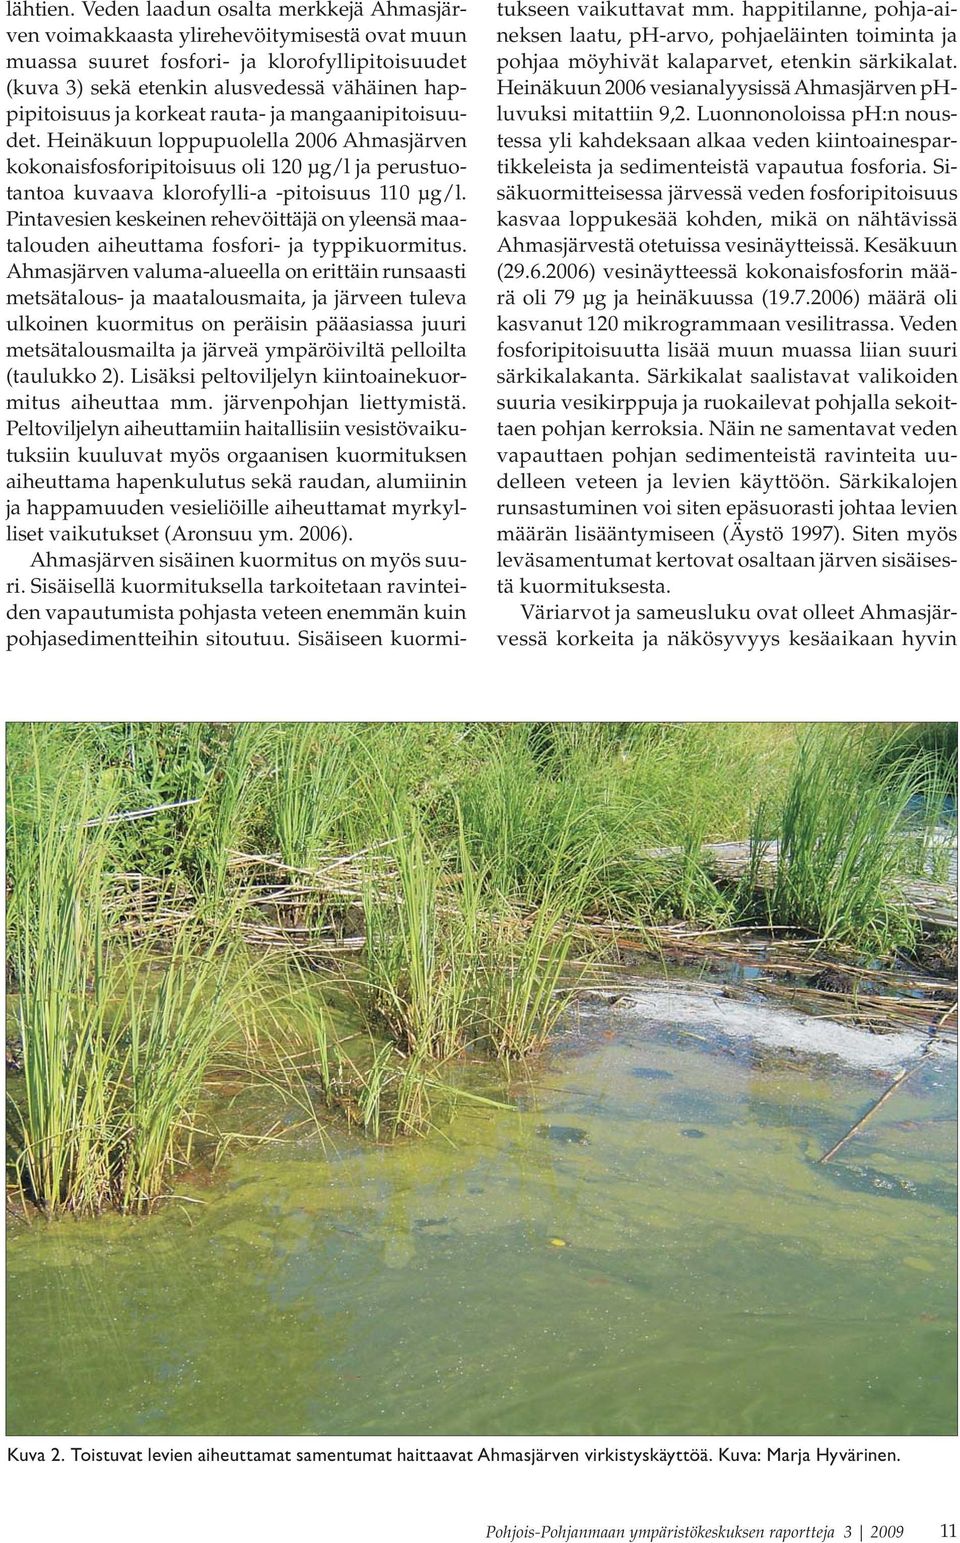 korkeat rauta- ja mangaanipitoisuudet. Heinäkuun loppupuolella 2006 Ahmasjärven kokonaisfosforipitoisuus oli 120 μg/l ja perustuotantoa kuvaava klorofylli-a -pitoisuus 110 μg/l.